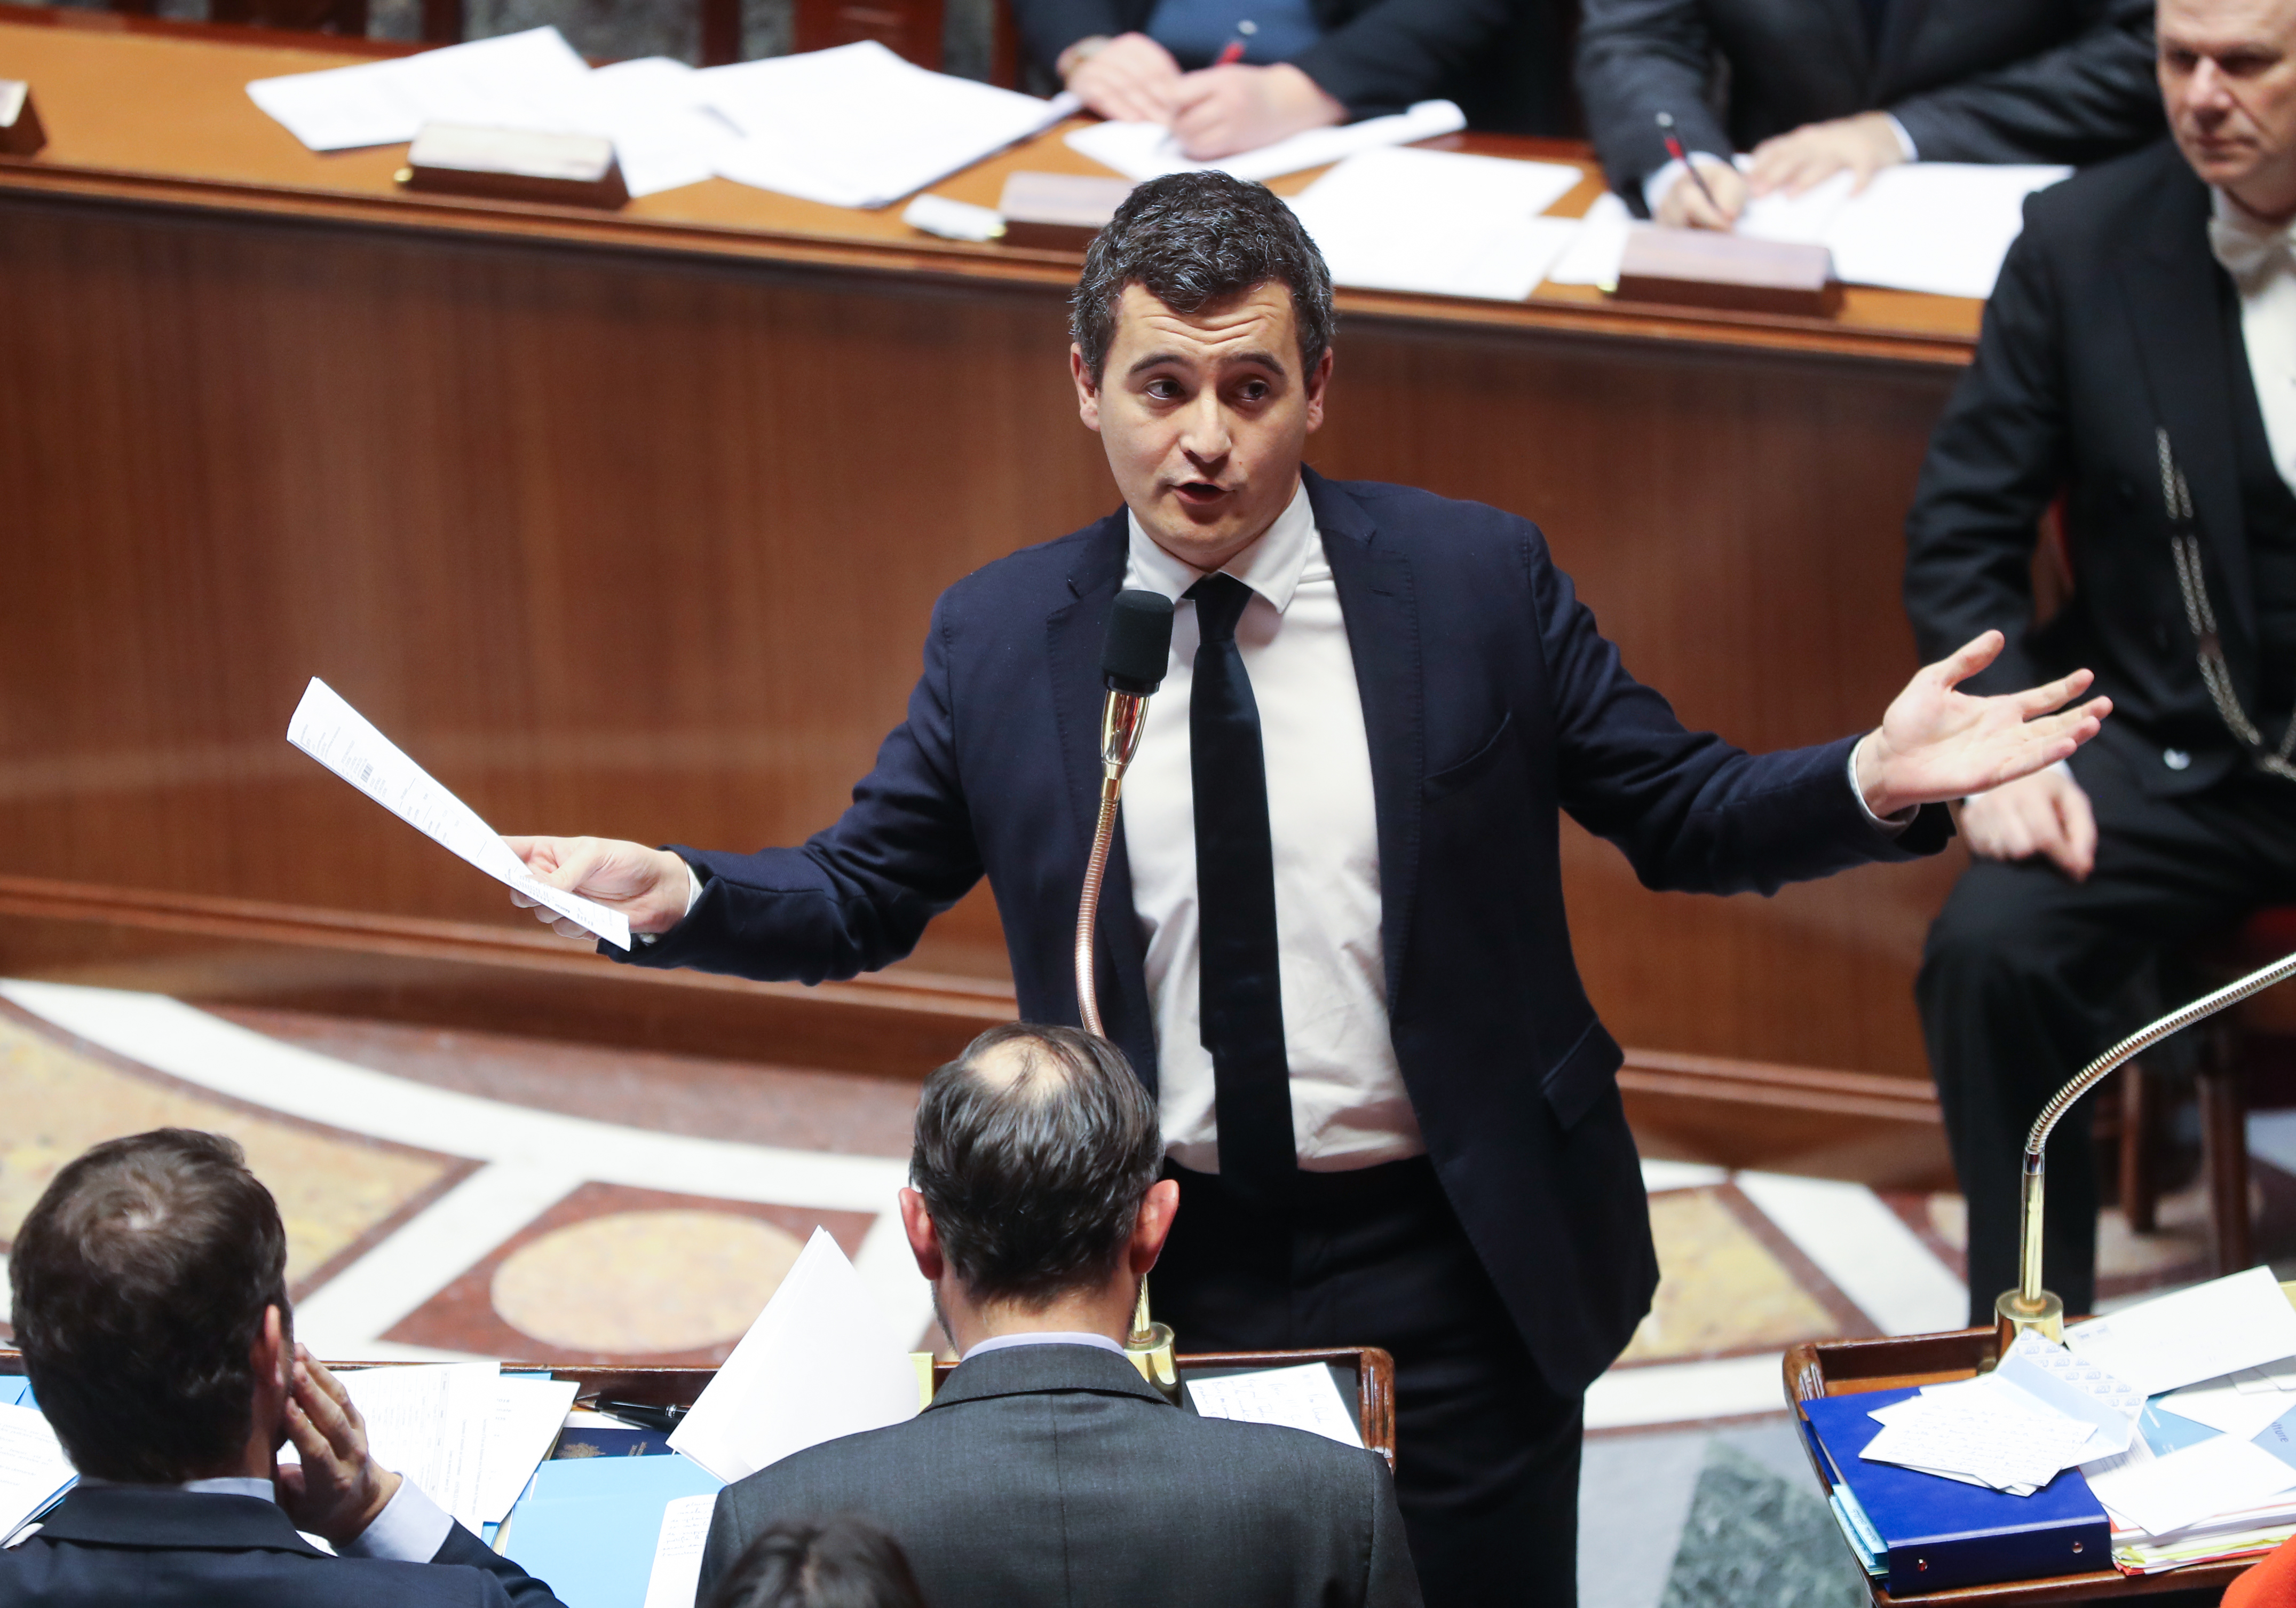 Nemi erőszakkal vádolják a francia kormány költségvetésért felelős miniszterét